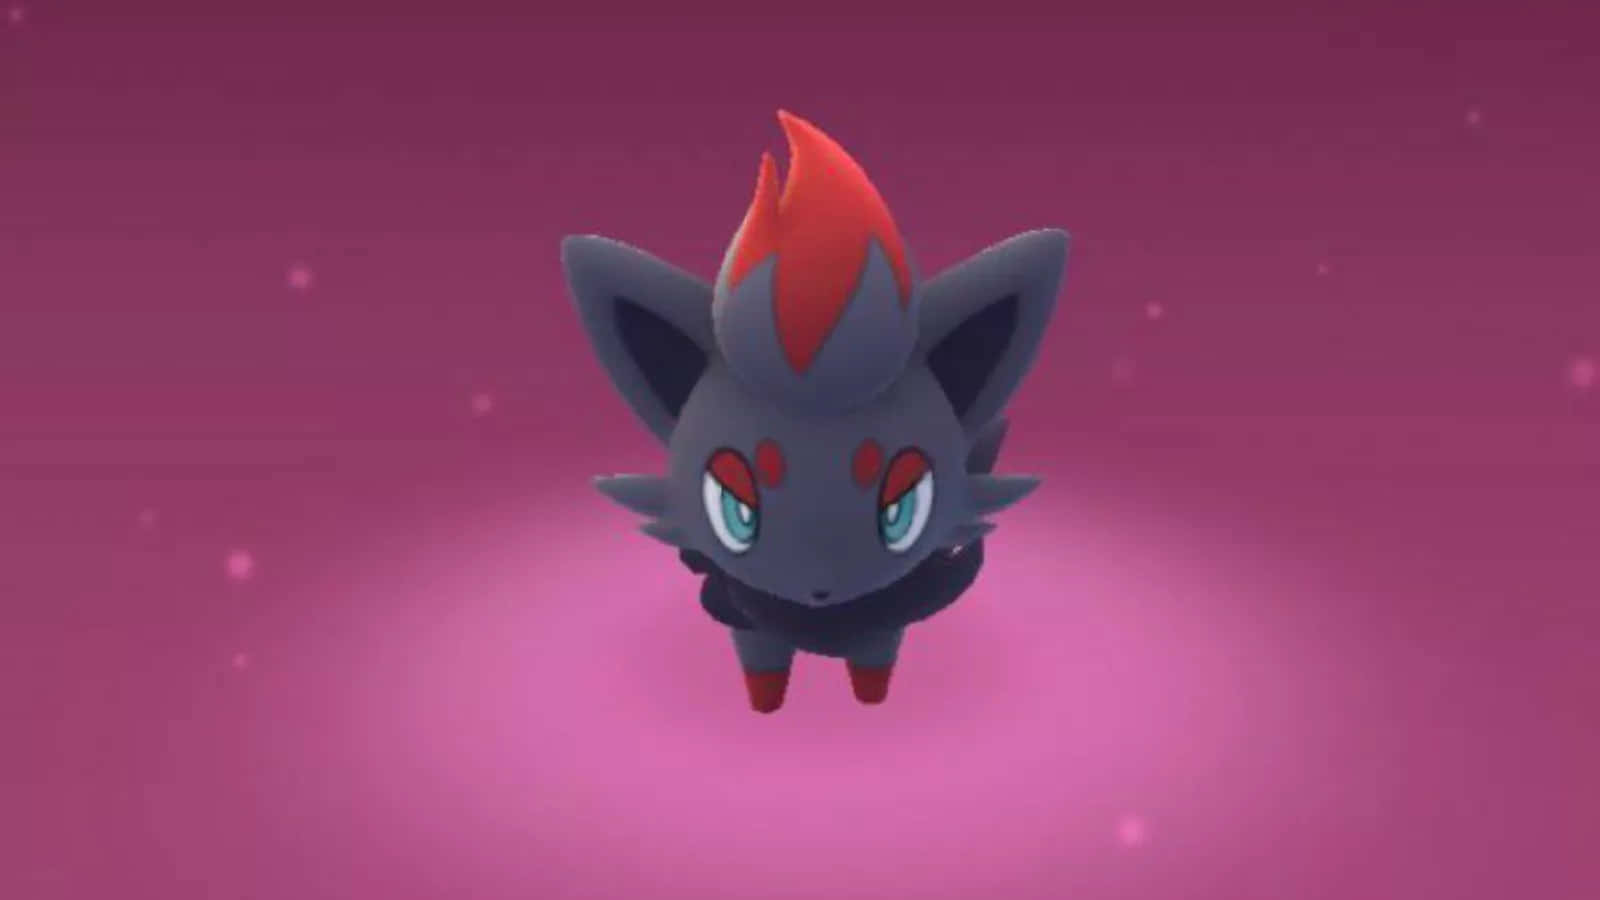 Et Pokémon-karakter med en rød næse og en sort krop Wallpaper